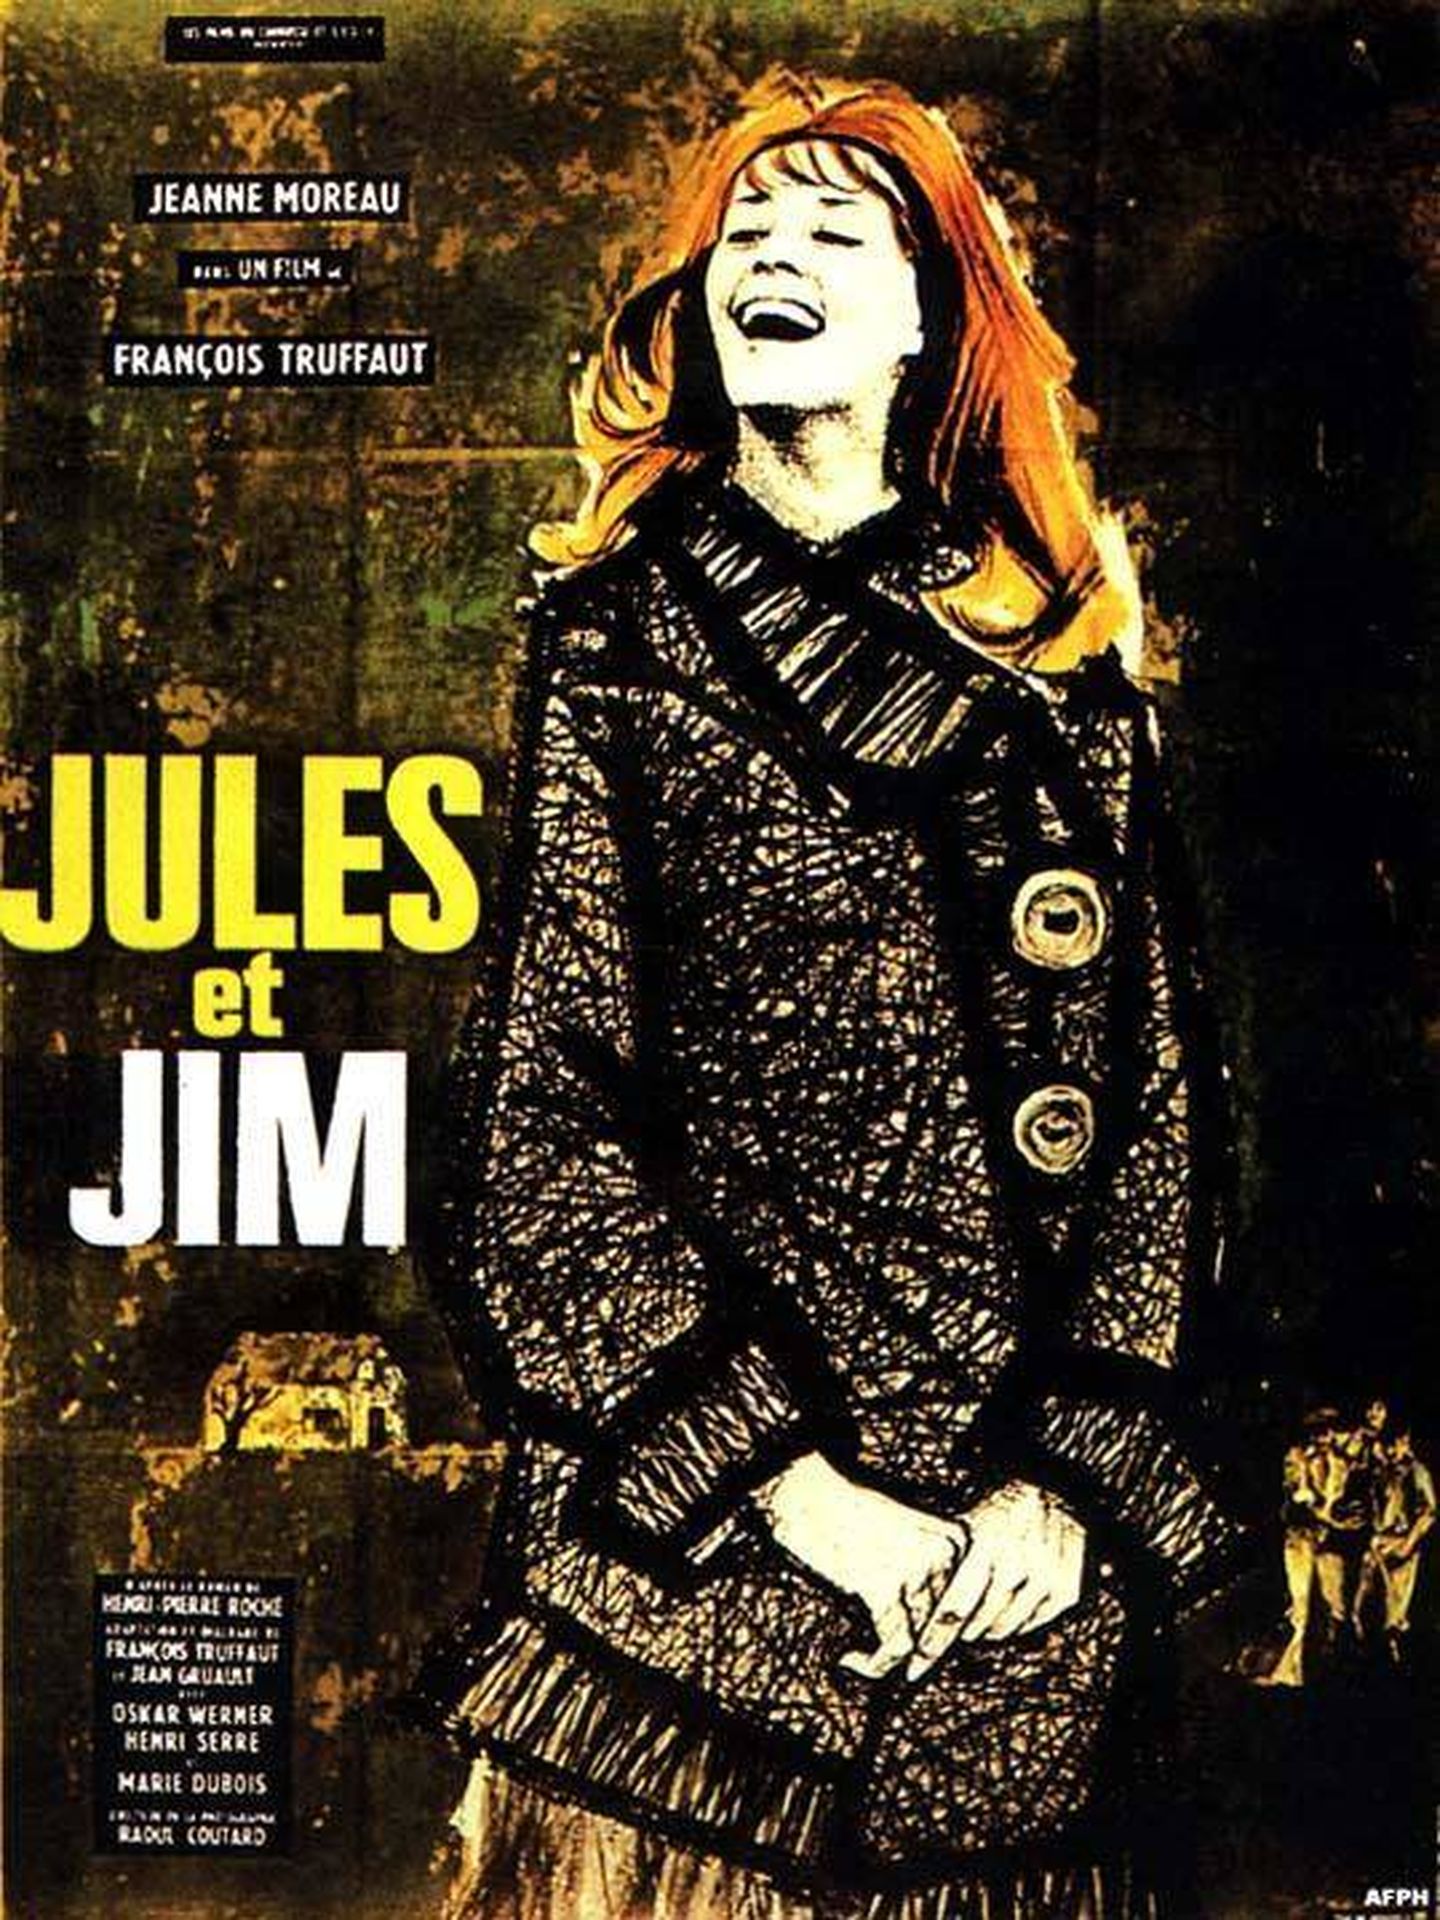 'Jules et Jim' (1962)